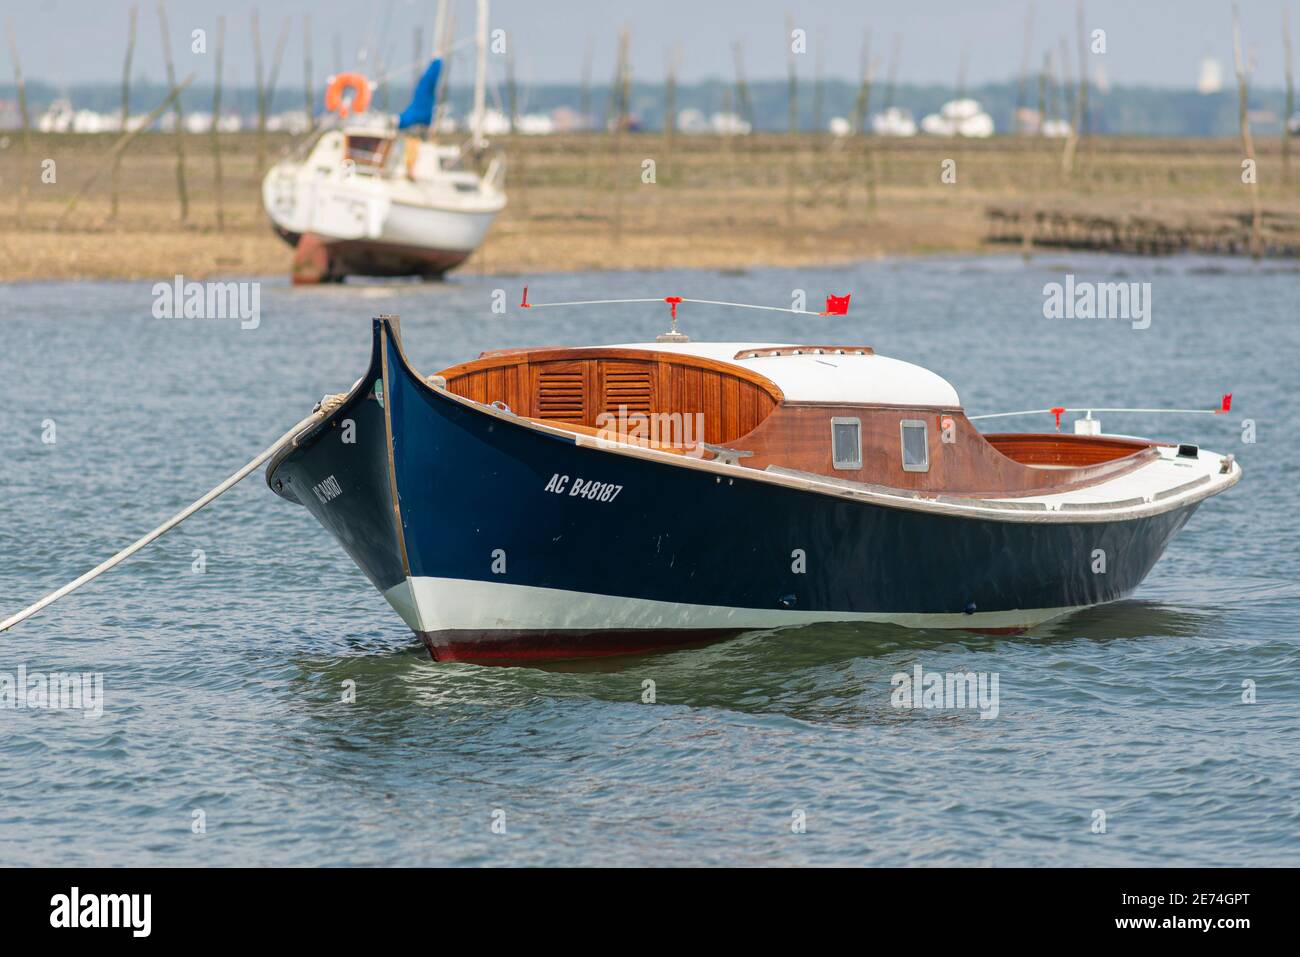 Le bateau Pinasse traditionnel est amarré dans la baie d'Arcachon, Gironde, France, Europe. C'est un bateau en bois typique très commun dans cette région Banque D'Images